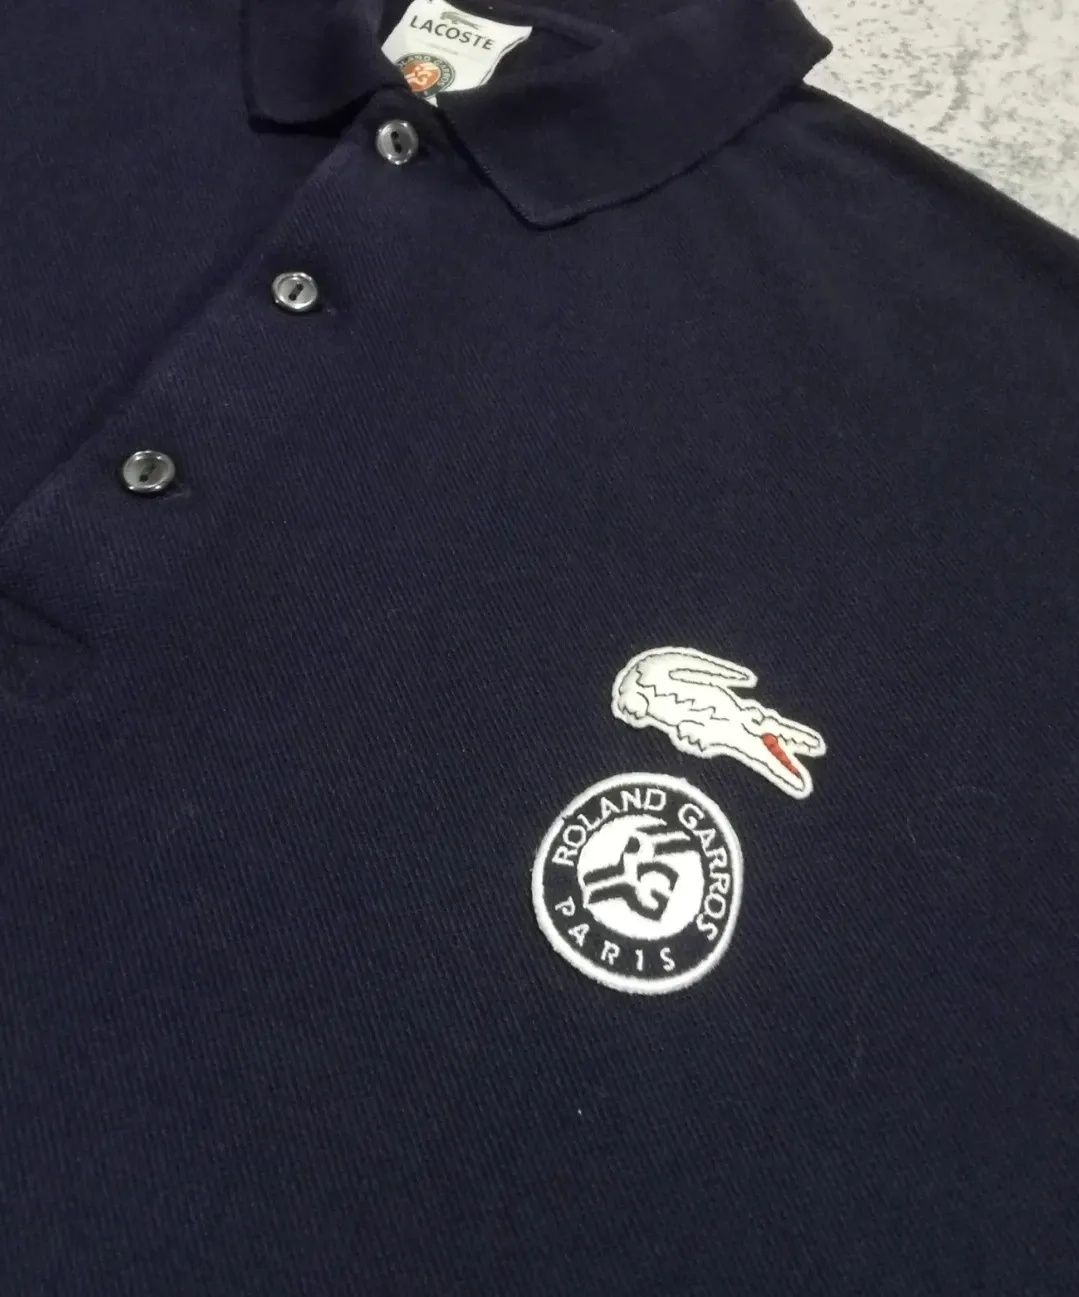 Фирменная оригинальная футболка поло бренда Lacoste Roland Garros ориг